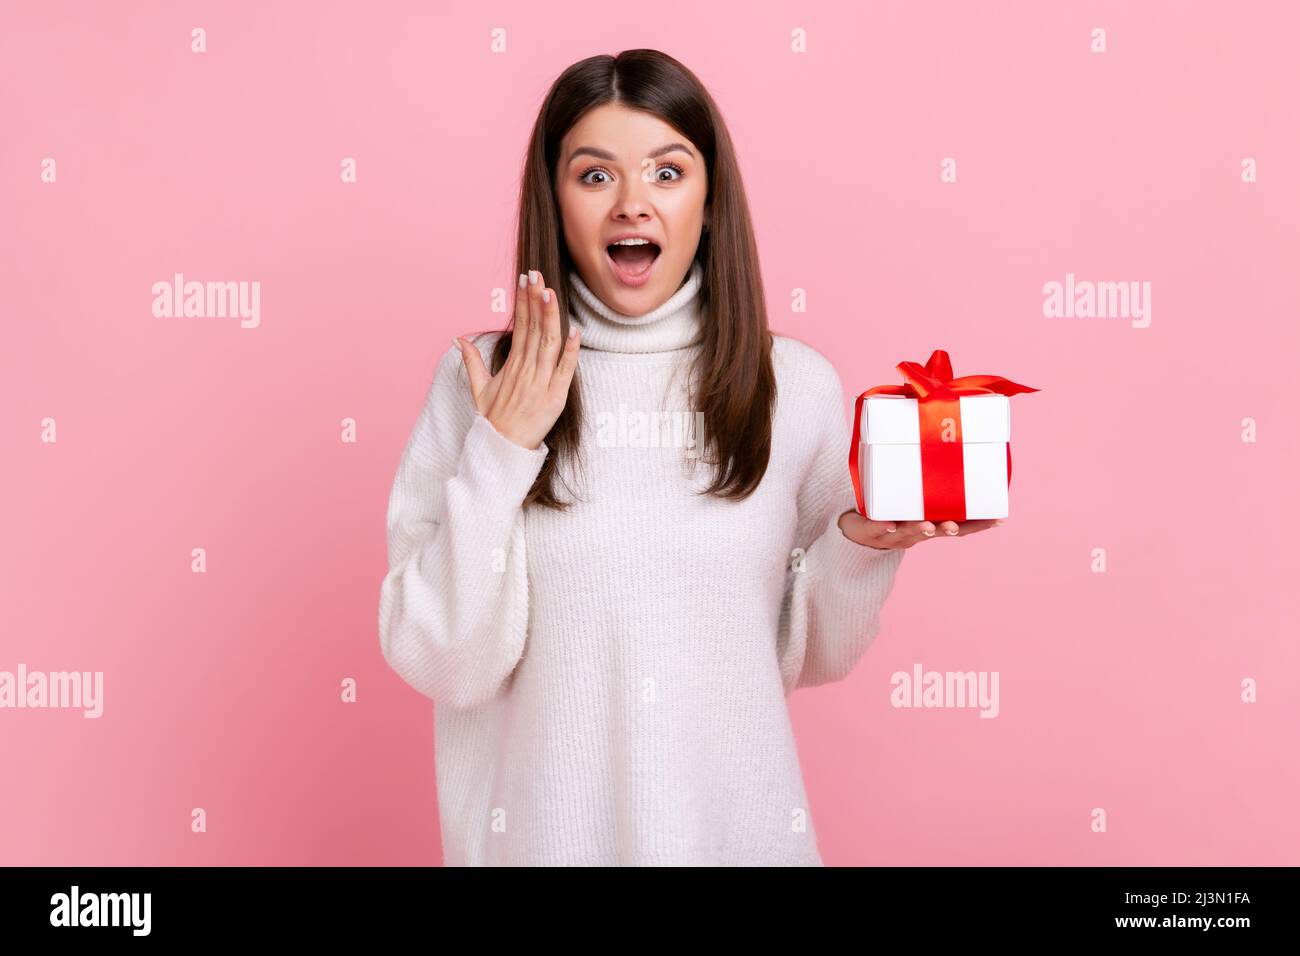 Überraschte Frau mit dunklem Haar, die eingewickelte Geschenk-Box hält, mit Erstaunen die Kamera anschaut und einen weißen Pullover im lässigen Stil trägt. Innenaufnahme des Studios isoliert auf rosa Hintergrund. Stockfoto